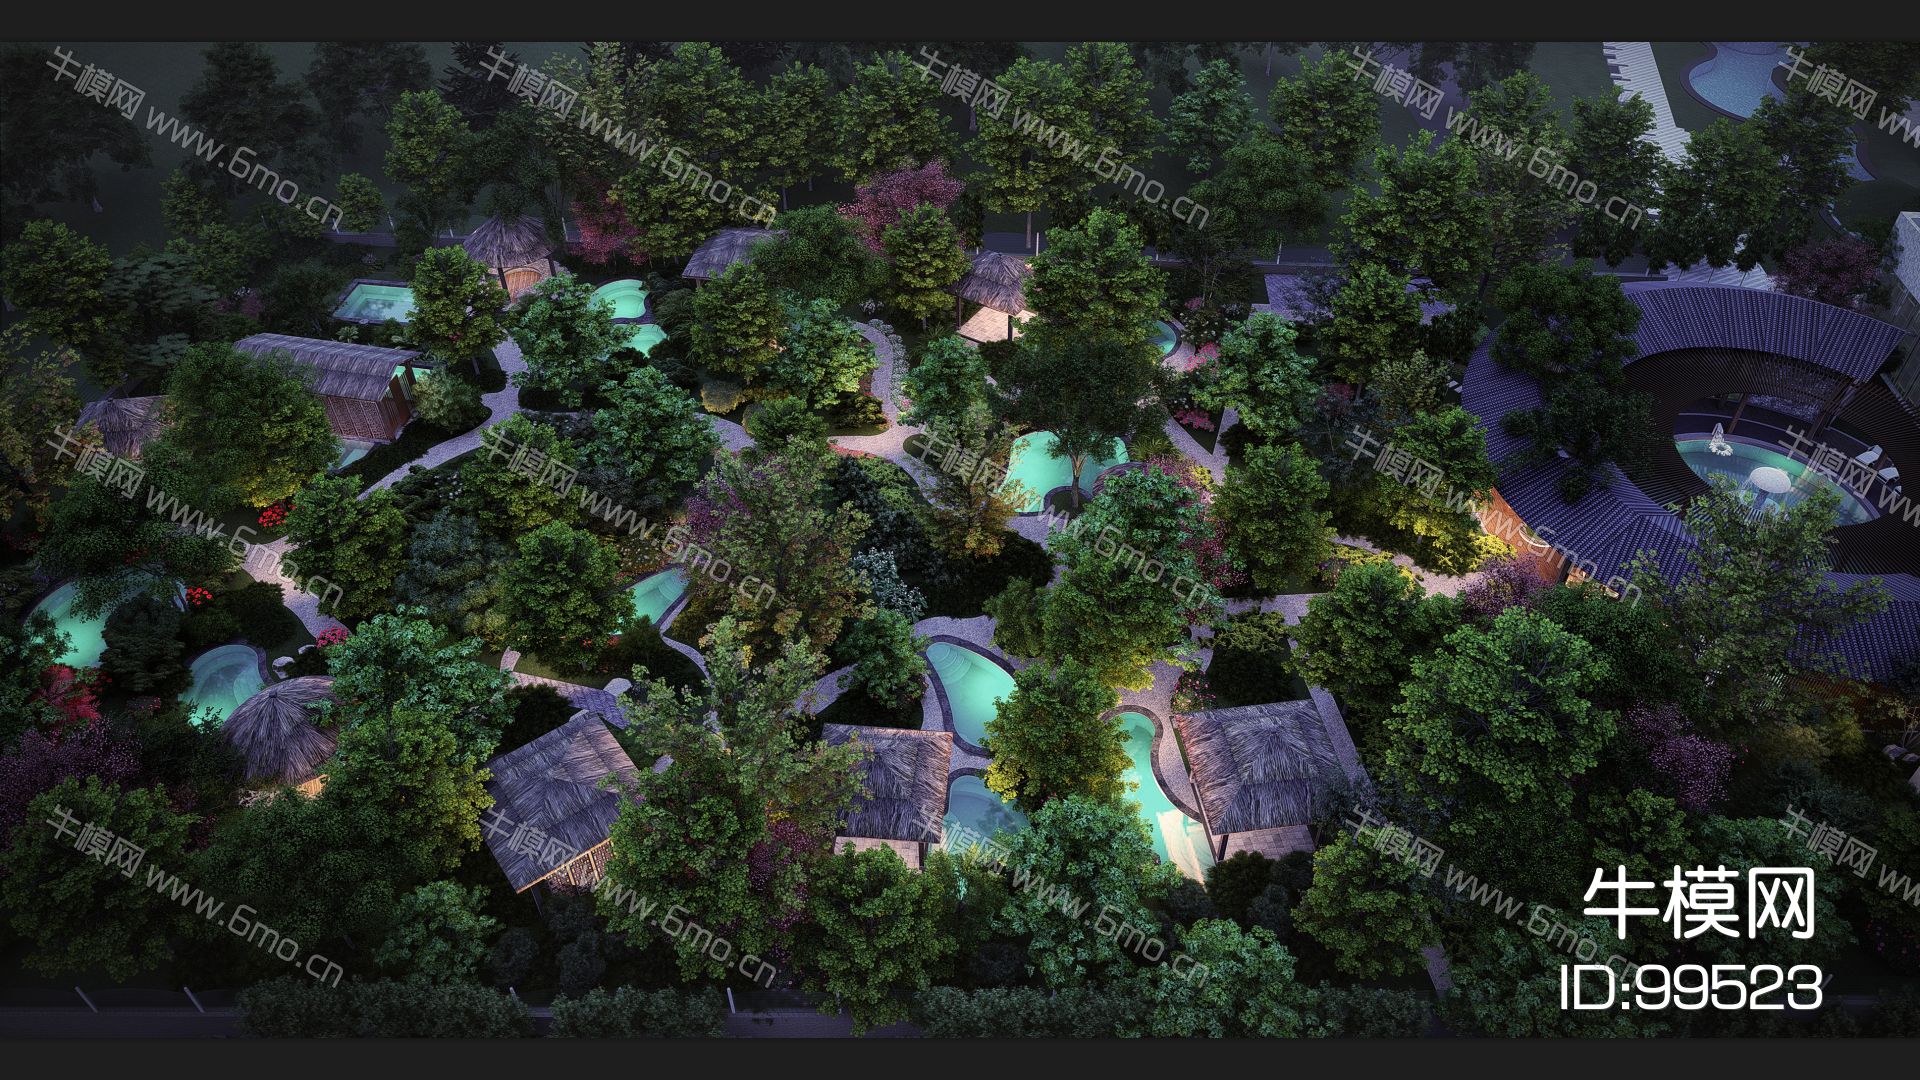 中式温泉区整体模型 温泉度假村